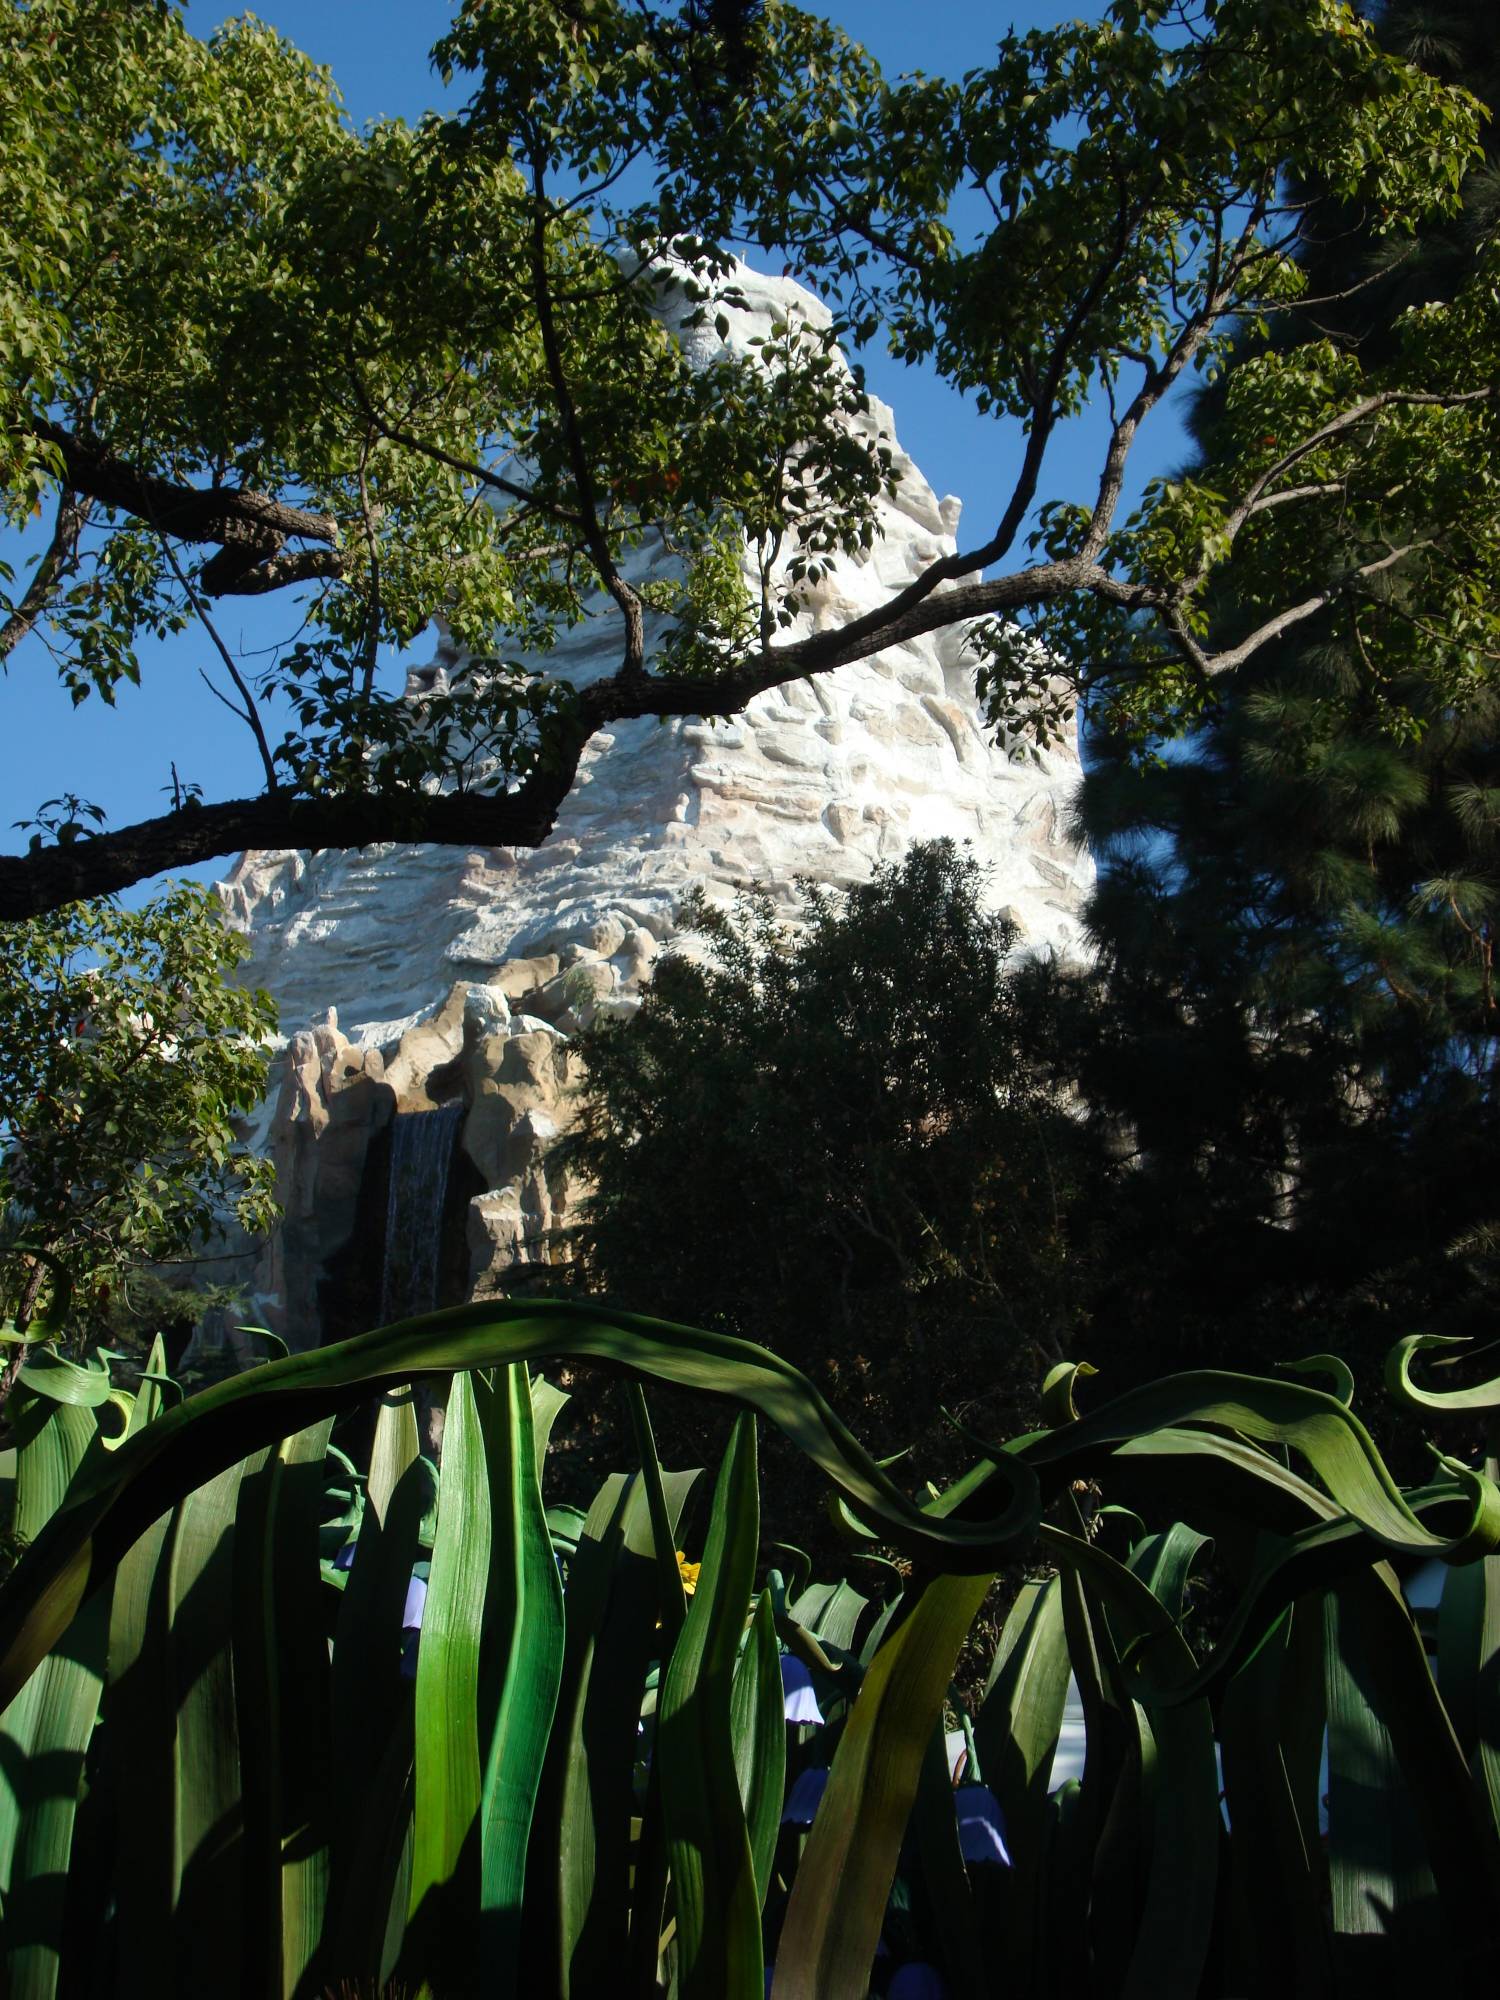 Disneyland - Matterhorn